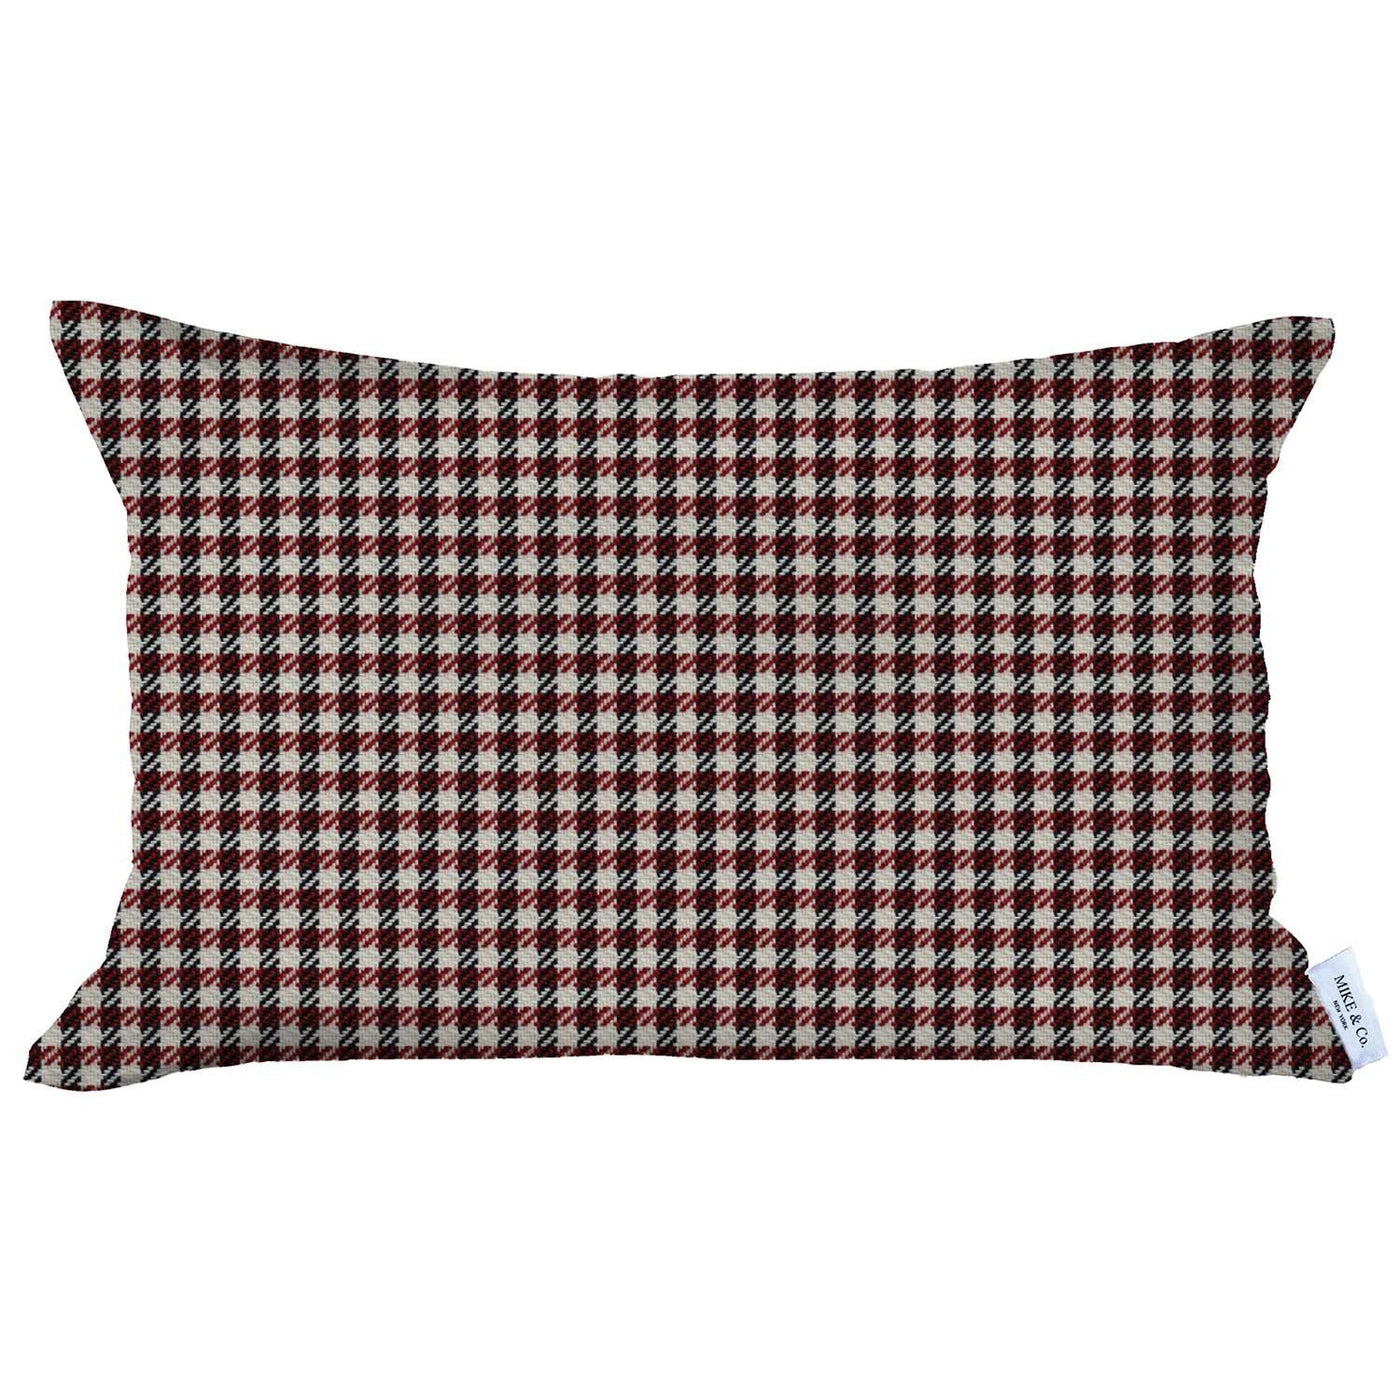 Red Houndstooth Lumbar Throw Pillow - Accent Throw Pillows